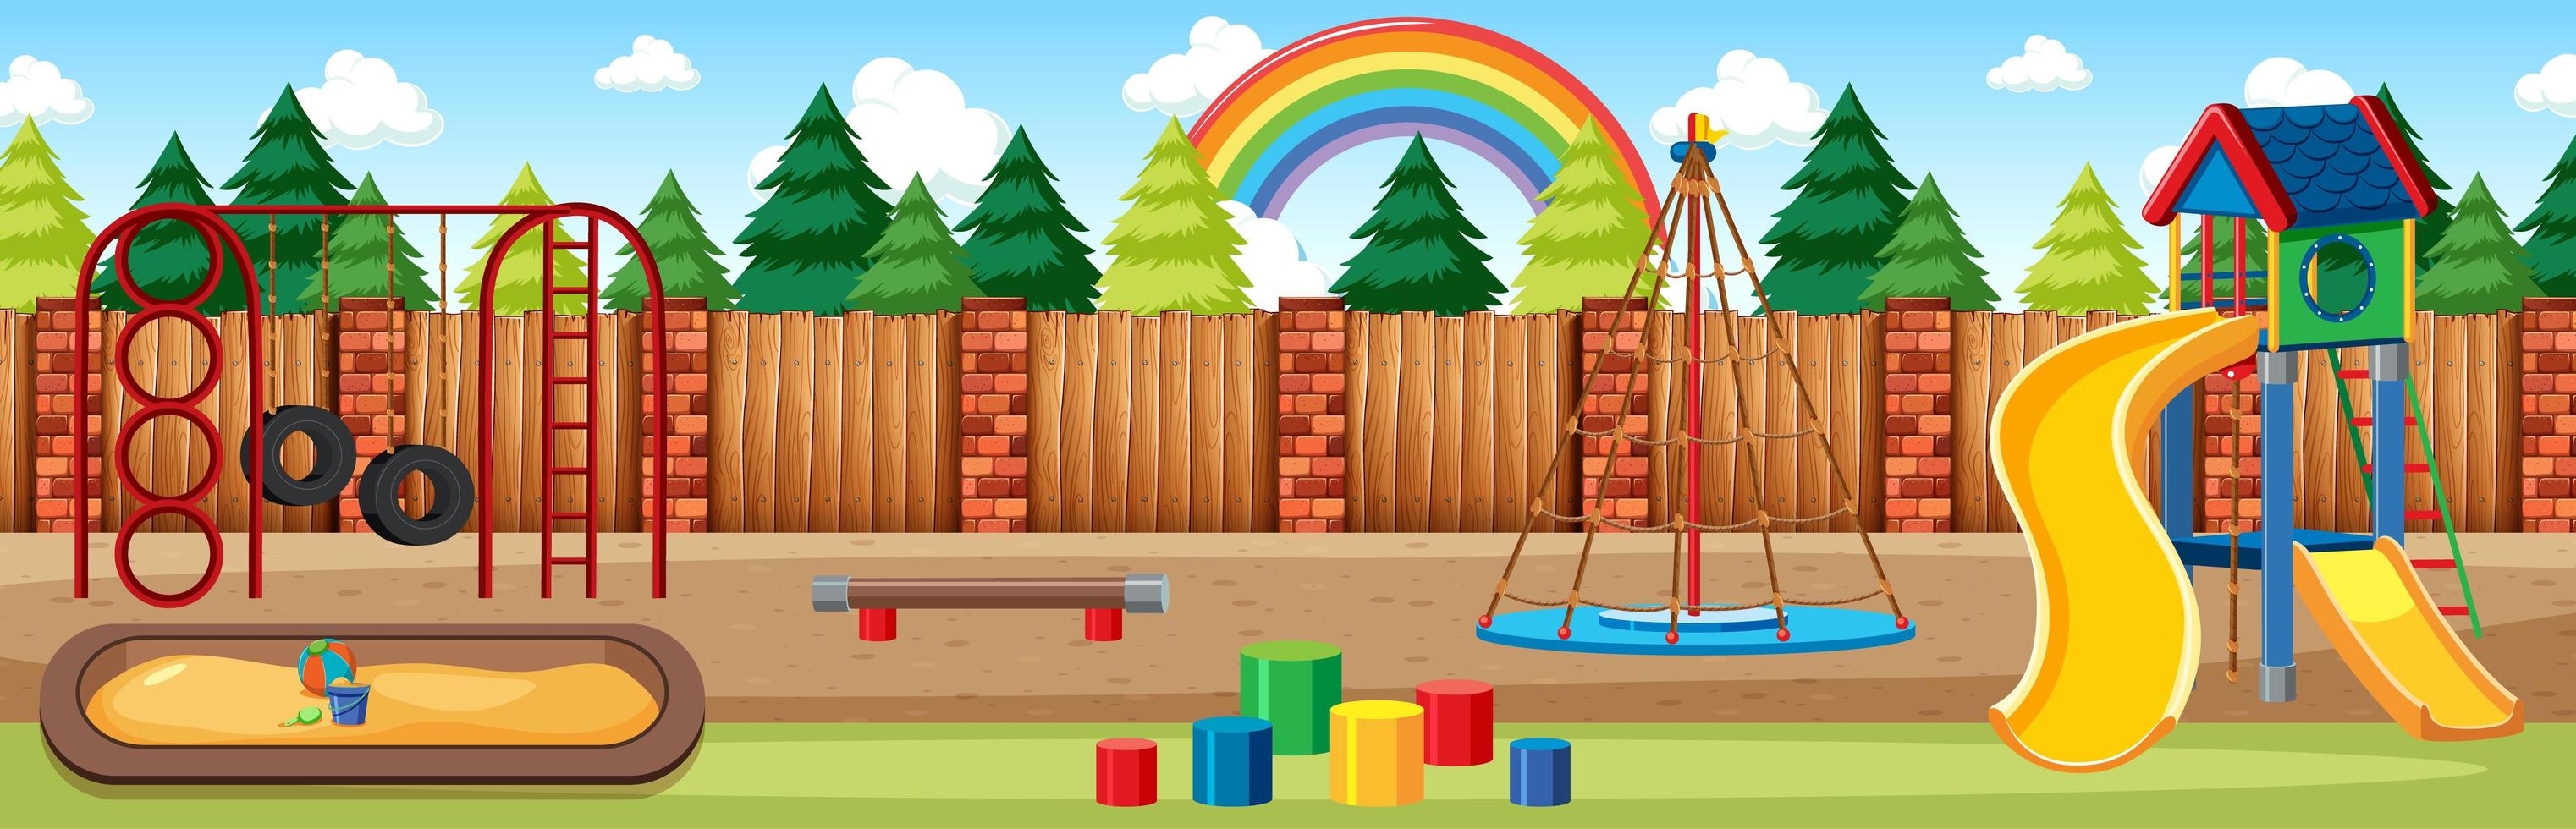 Kinderspielplatz im Park mit Regenbogen vektor